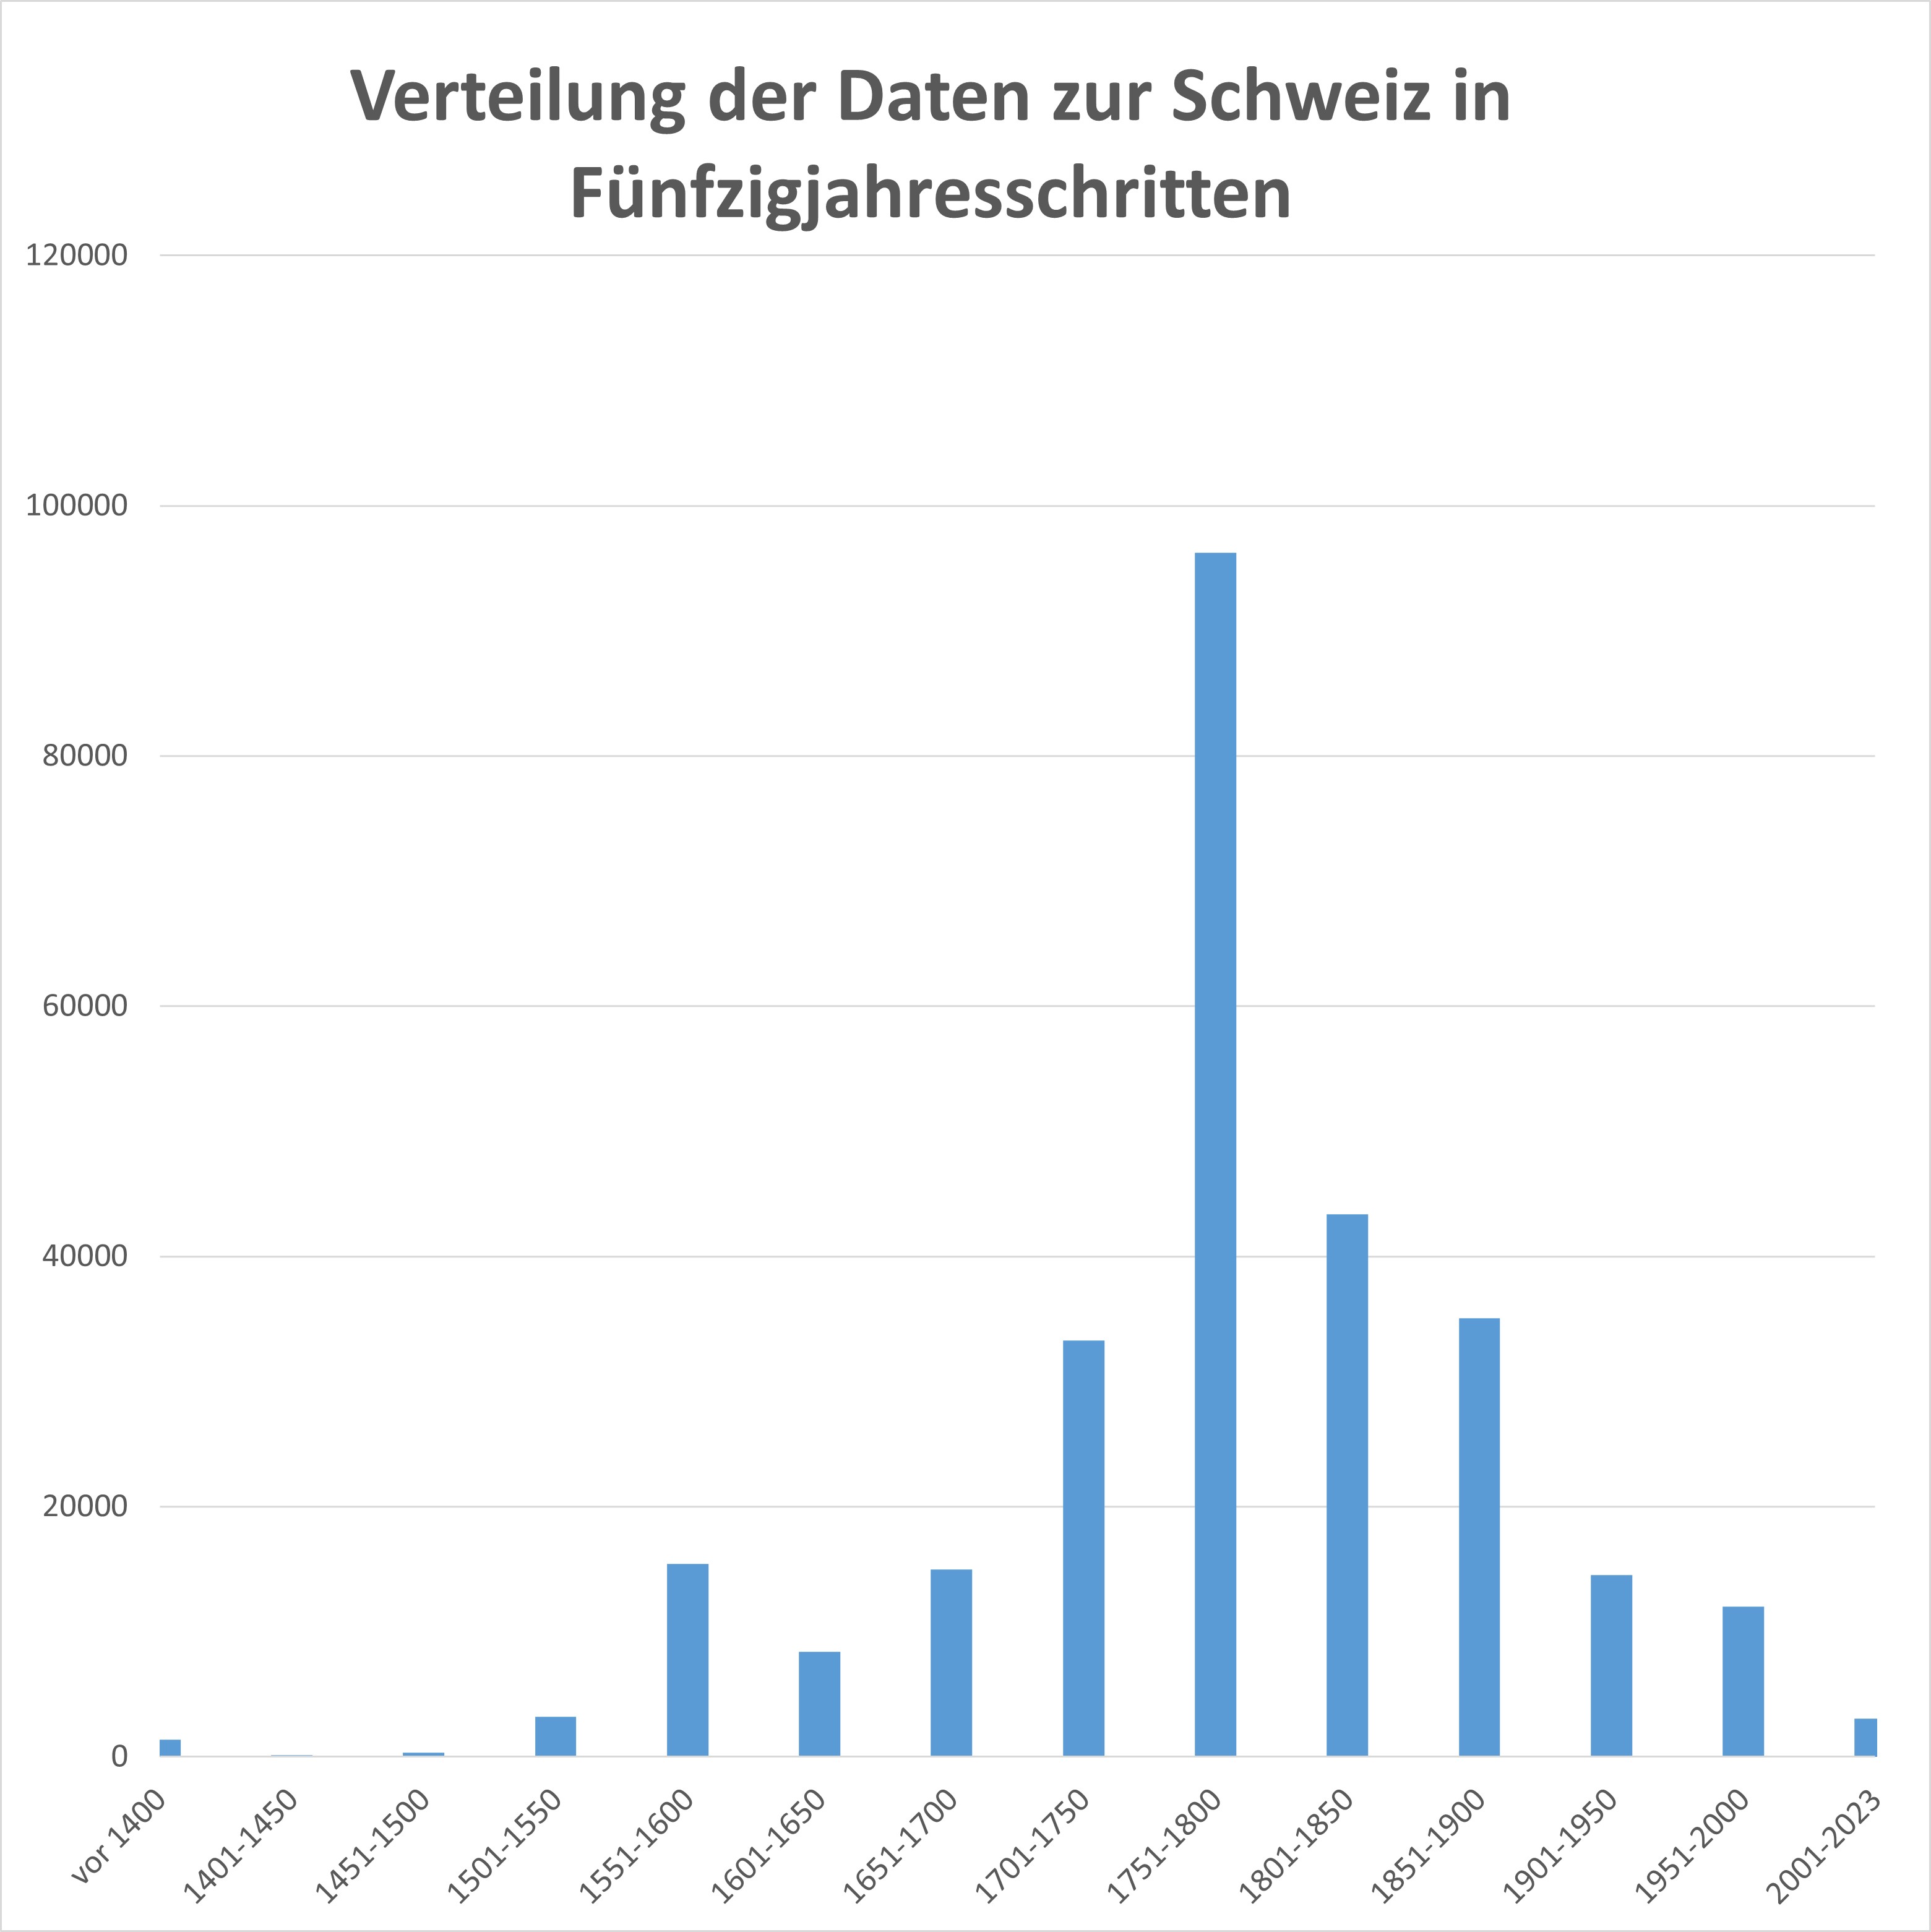 Verteilung der Daten zur Schweiz (735-2023) in Fünfzigjahresschritten